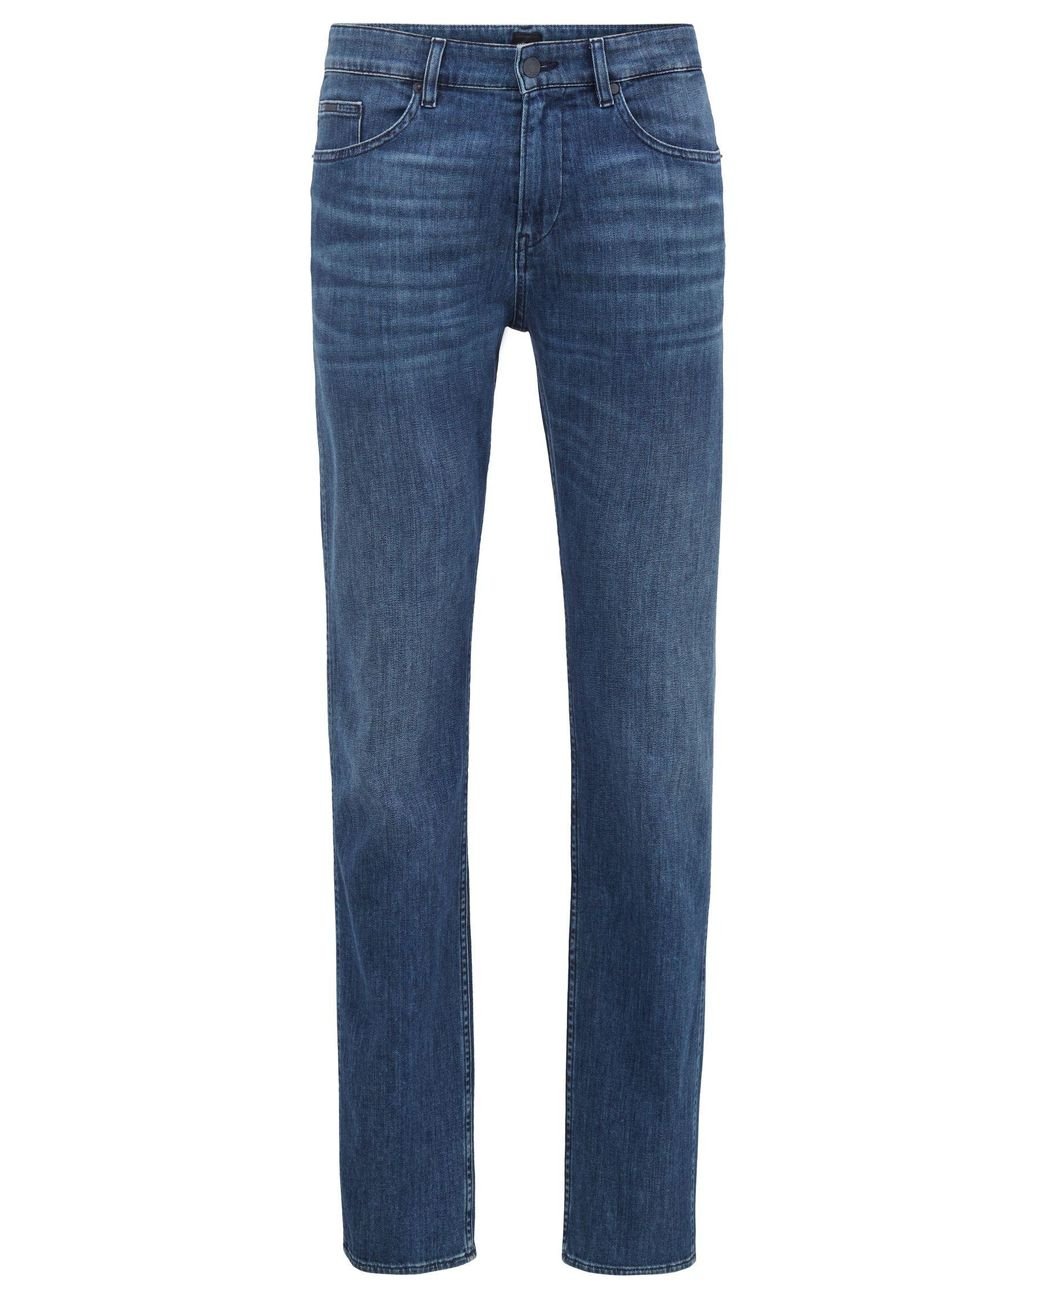 BOSS by Hugo Boss Slim Fit Jeans In Lightweight Italian Stretch Denim ...